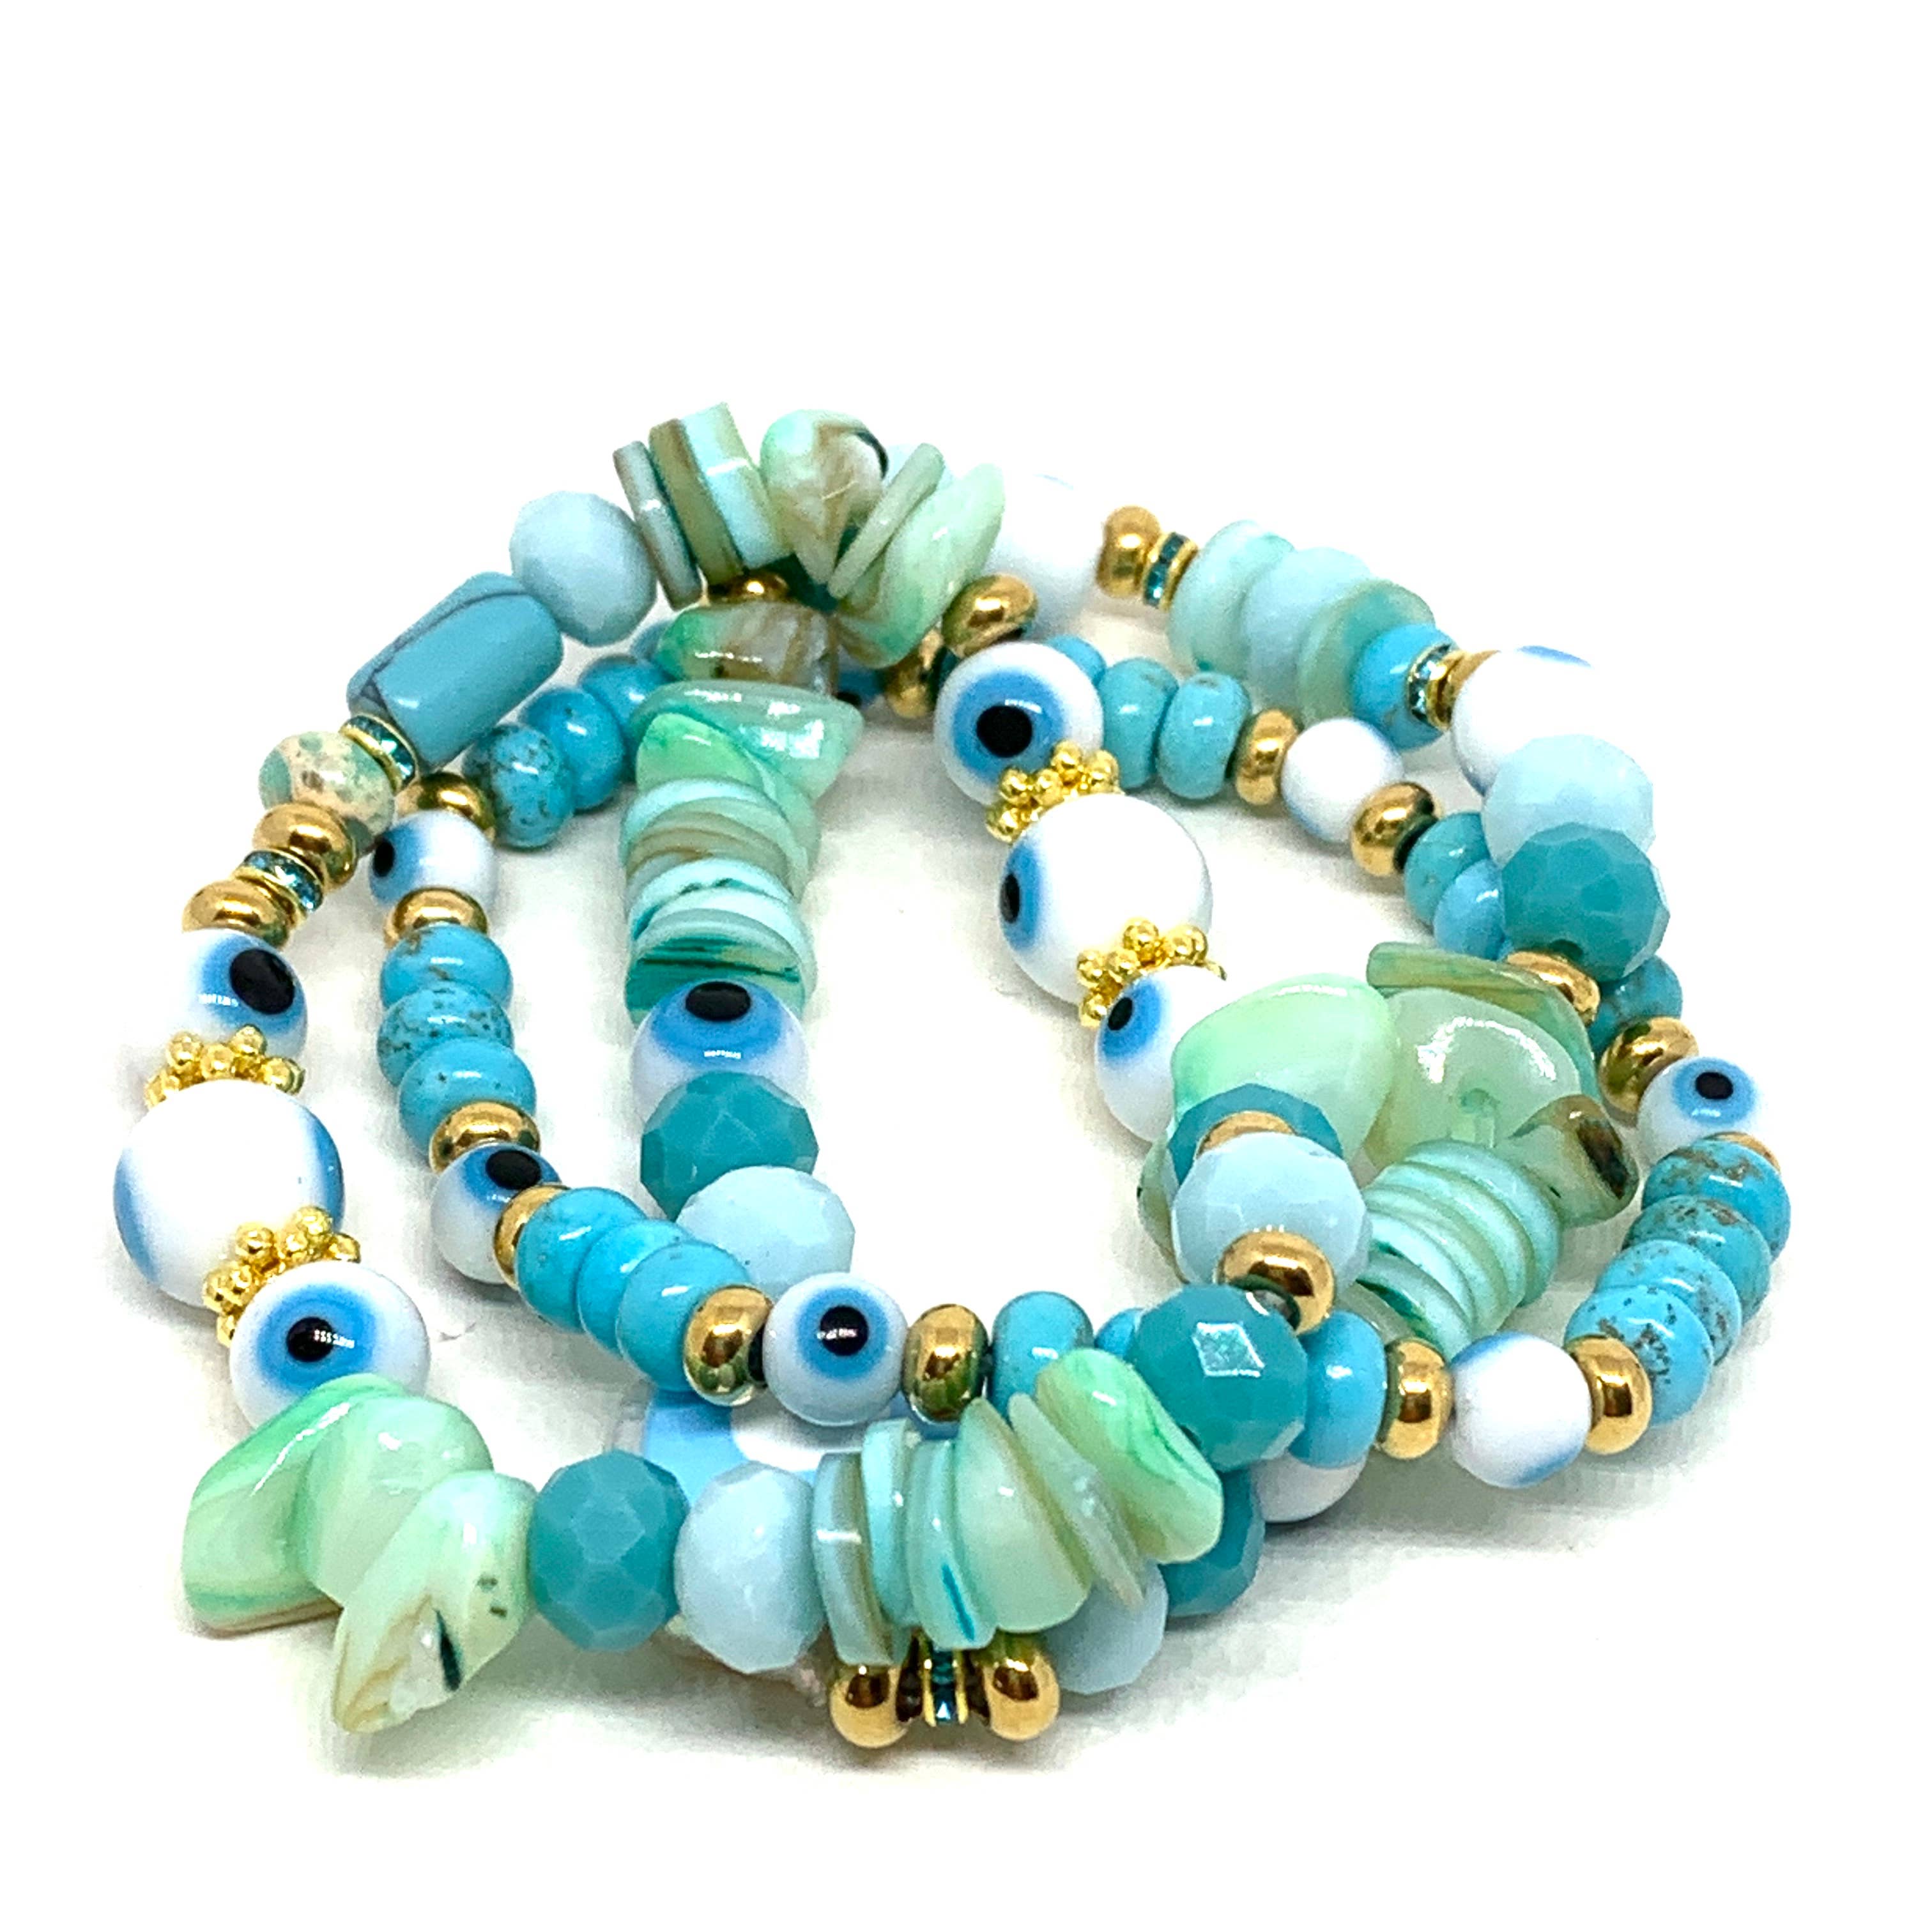 Wholesale cheap wholesale boho style white turquoise bead stack bracelet  set for women From malibabacom